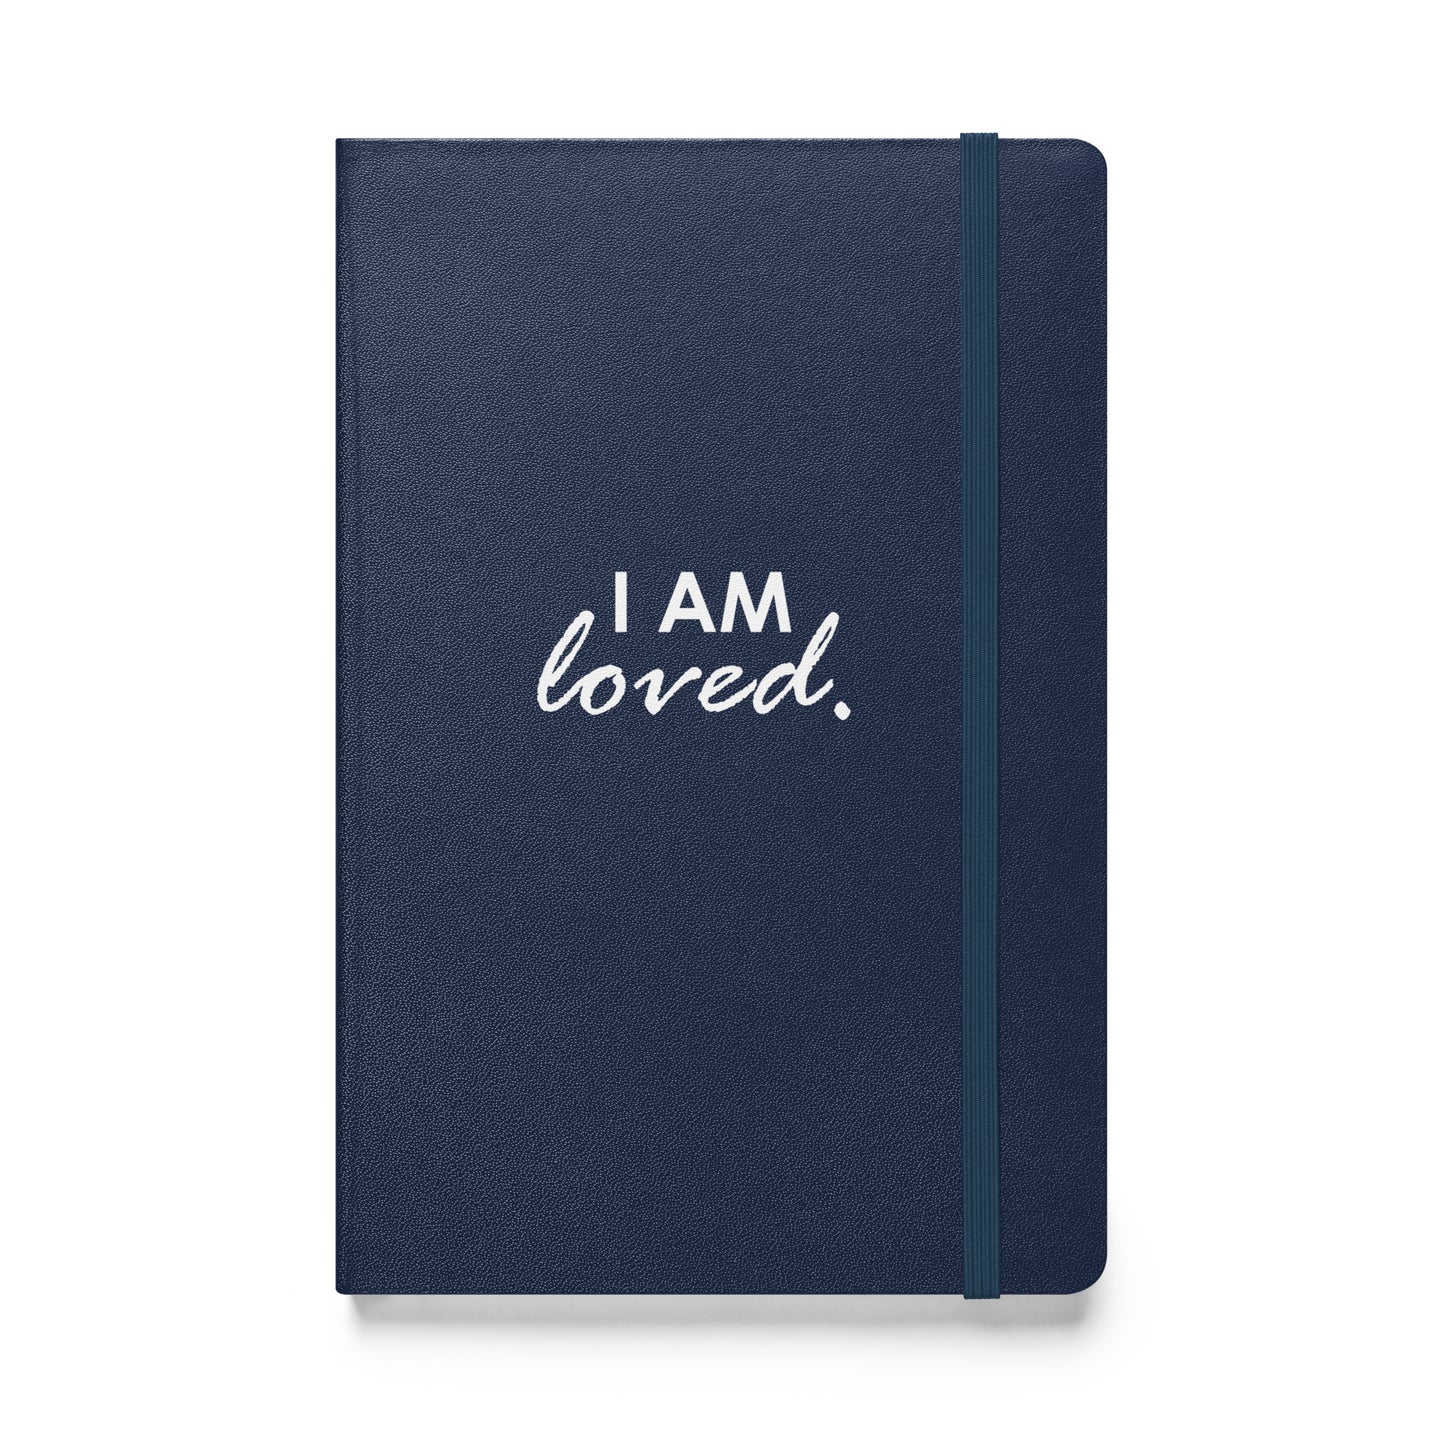 I AM LOVED - Hardcover bound notebook & FREE Affirmation Digital Download